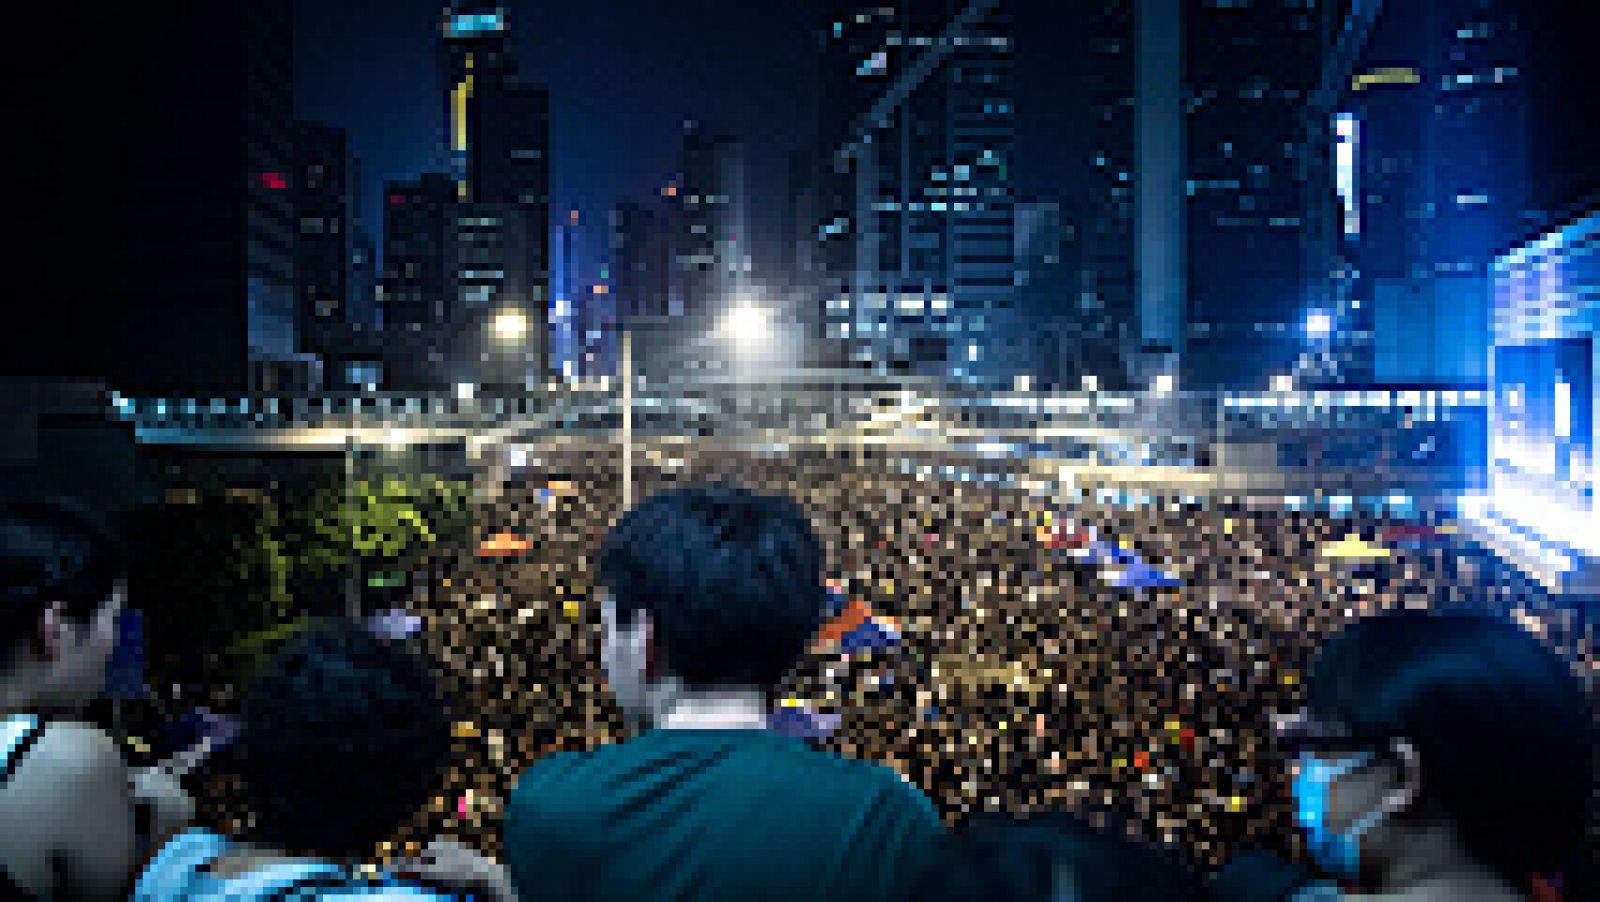   Los jóvenes de Hong Kong se preparan para intensificar este miércoles su campaña de protestas por la ciudad a favor de la democracia con la toma de edificios gubernamentales de manera previa al Día Nacional de China, cuyas celebraciones han sido suspendidas en la ciudad debido a la magnitud del movimiento. 